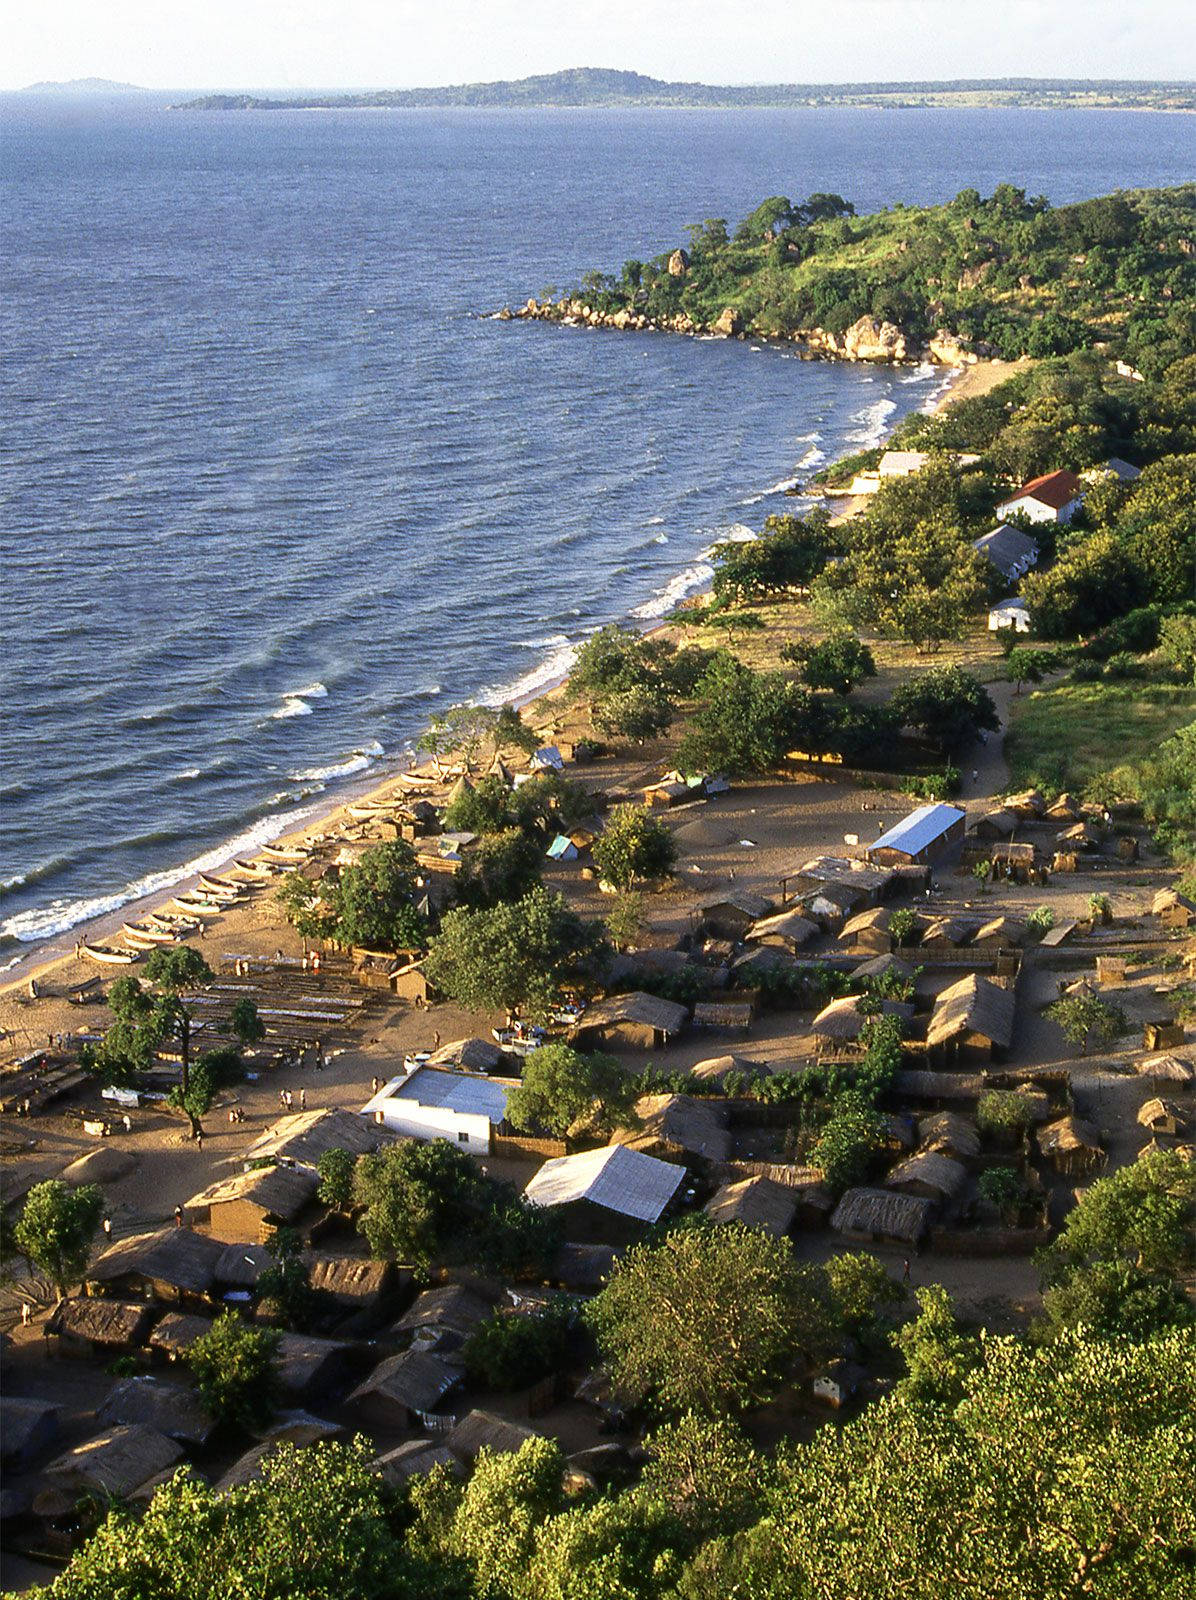 Kleinehäuser In Malawi In Der Nähe Des Sees Wallpaper